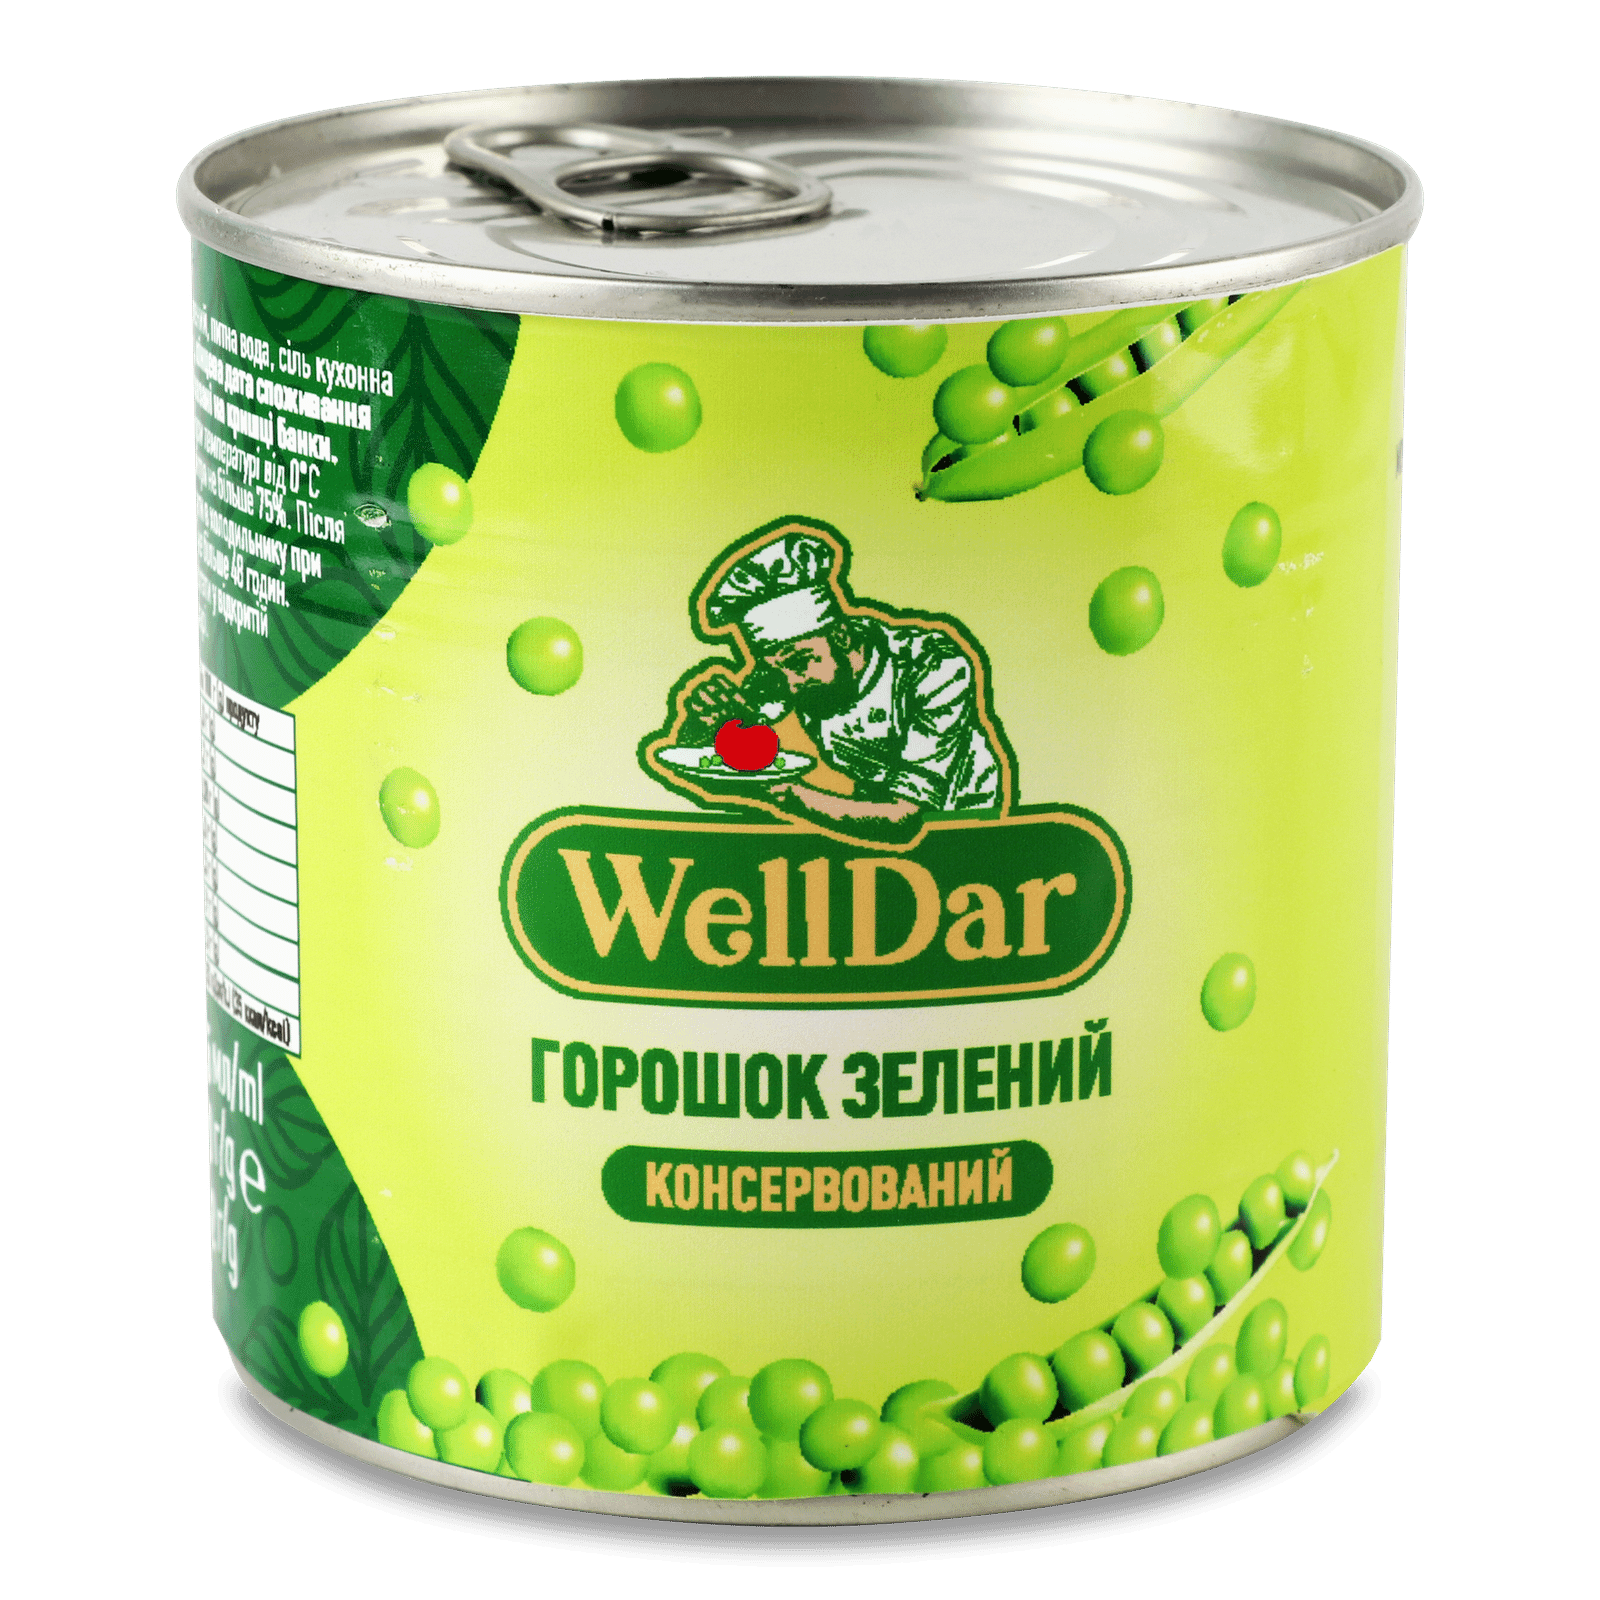 Горошок WellDar зелений консервований, ключ з/б - 1